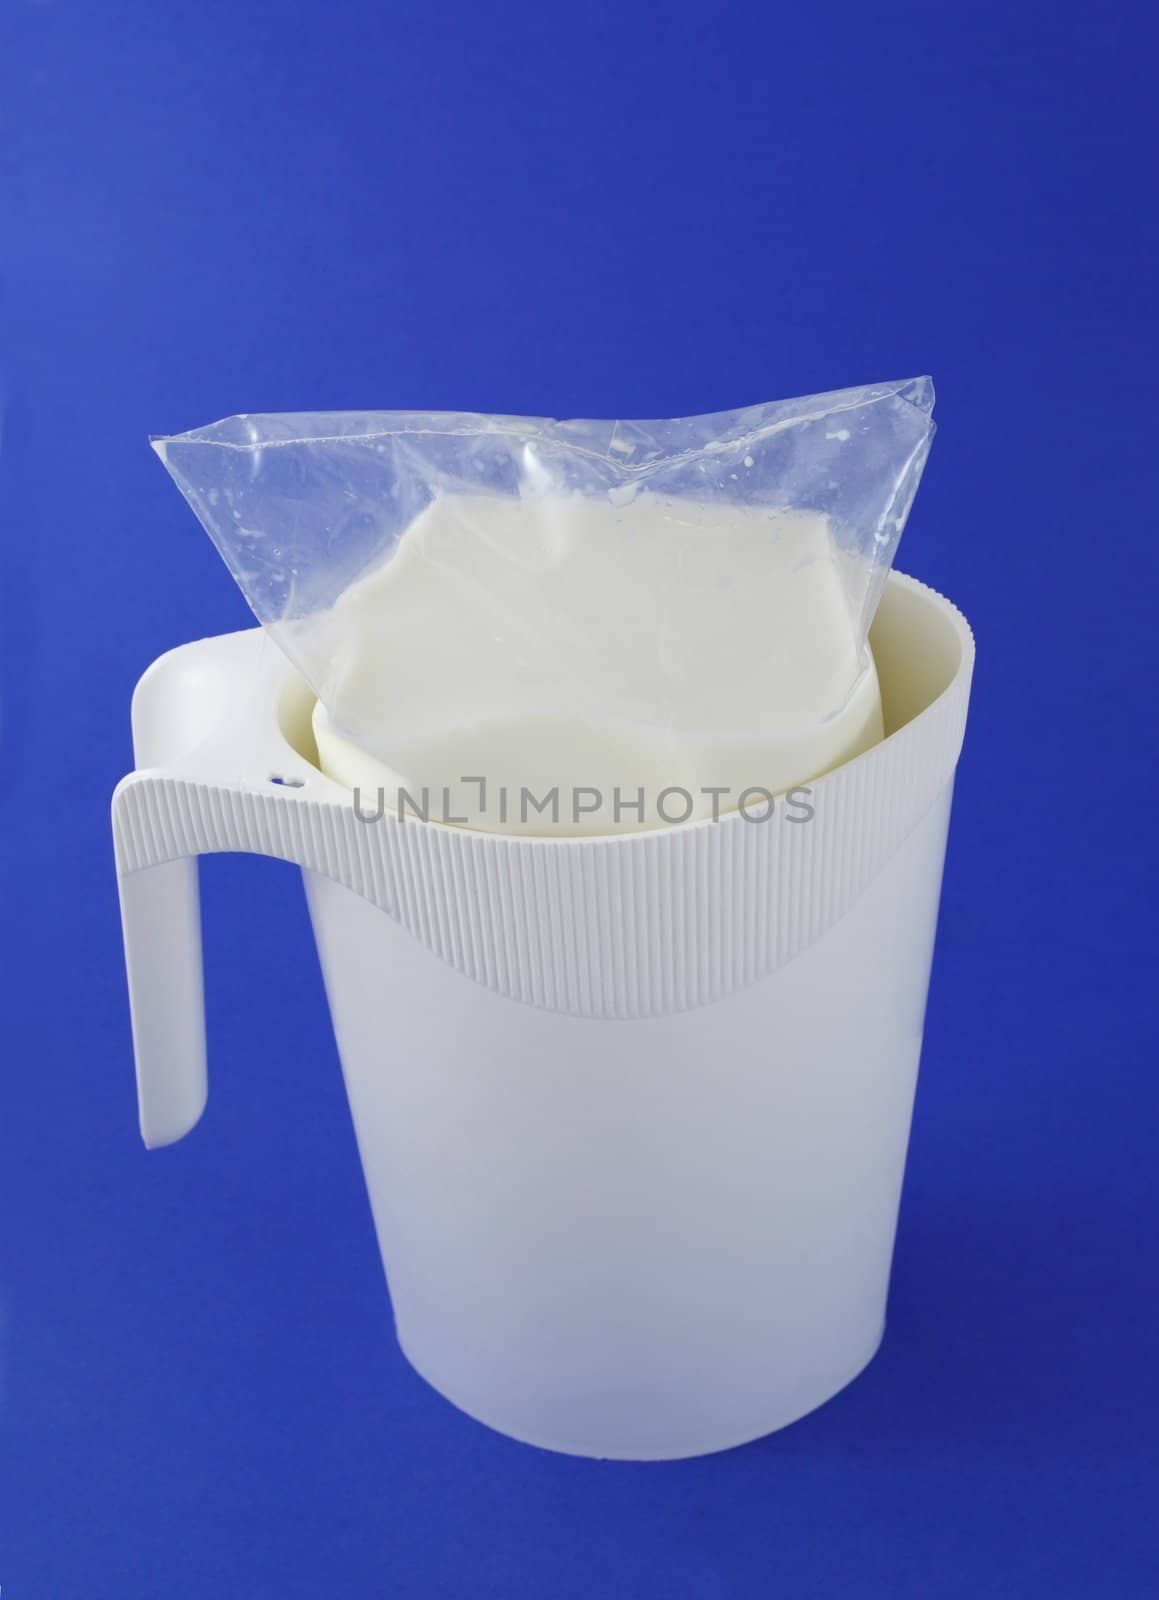 white milk pitcher, blue background